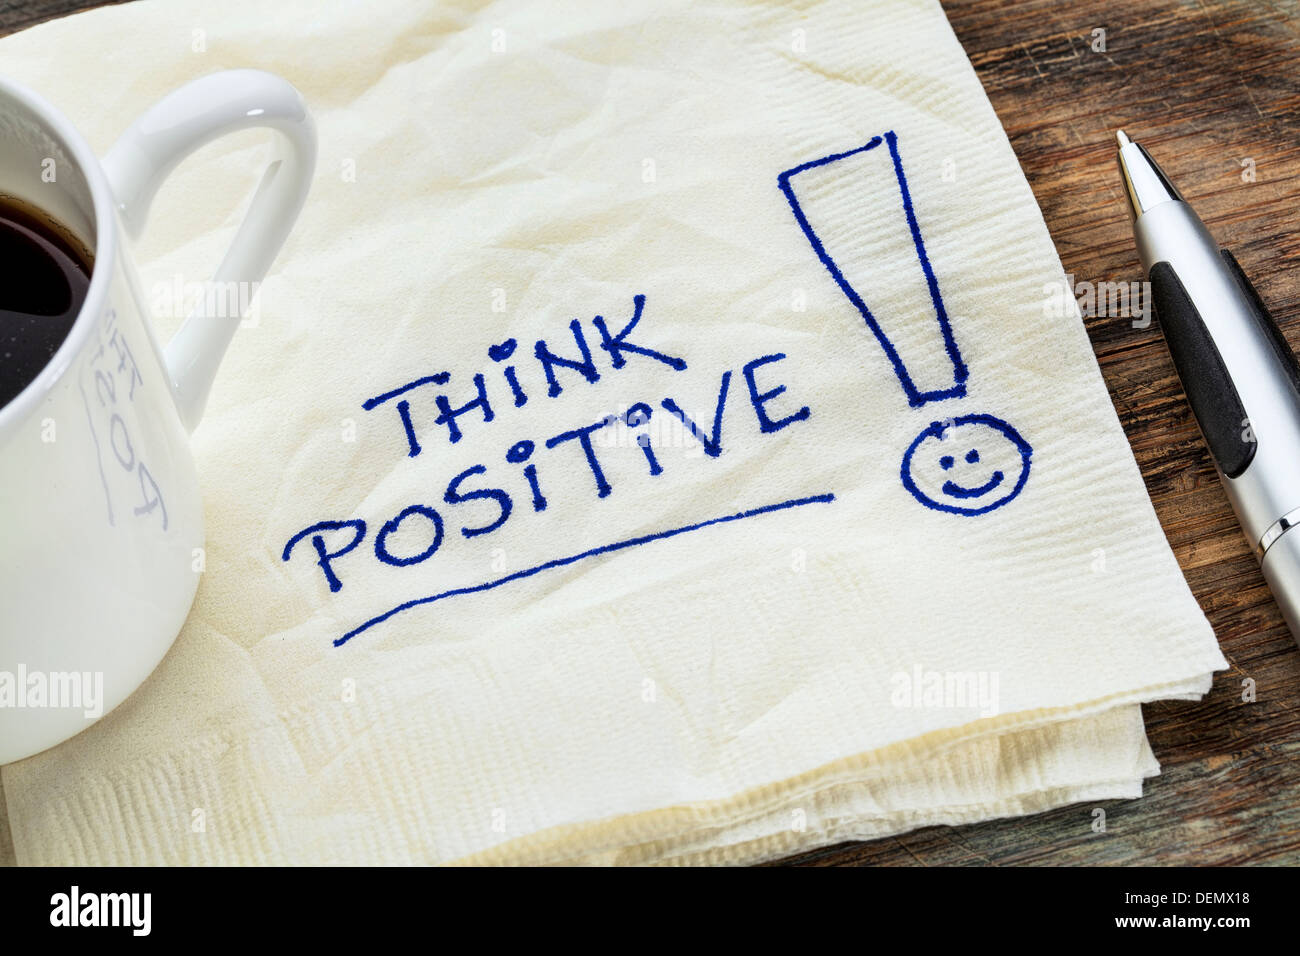 denke positiv - Motivations Slogan auf eine Serviette mit einer Tasse Kaffee Stockfoto